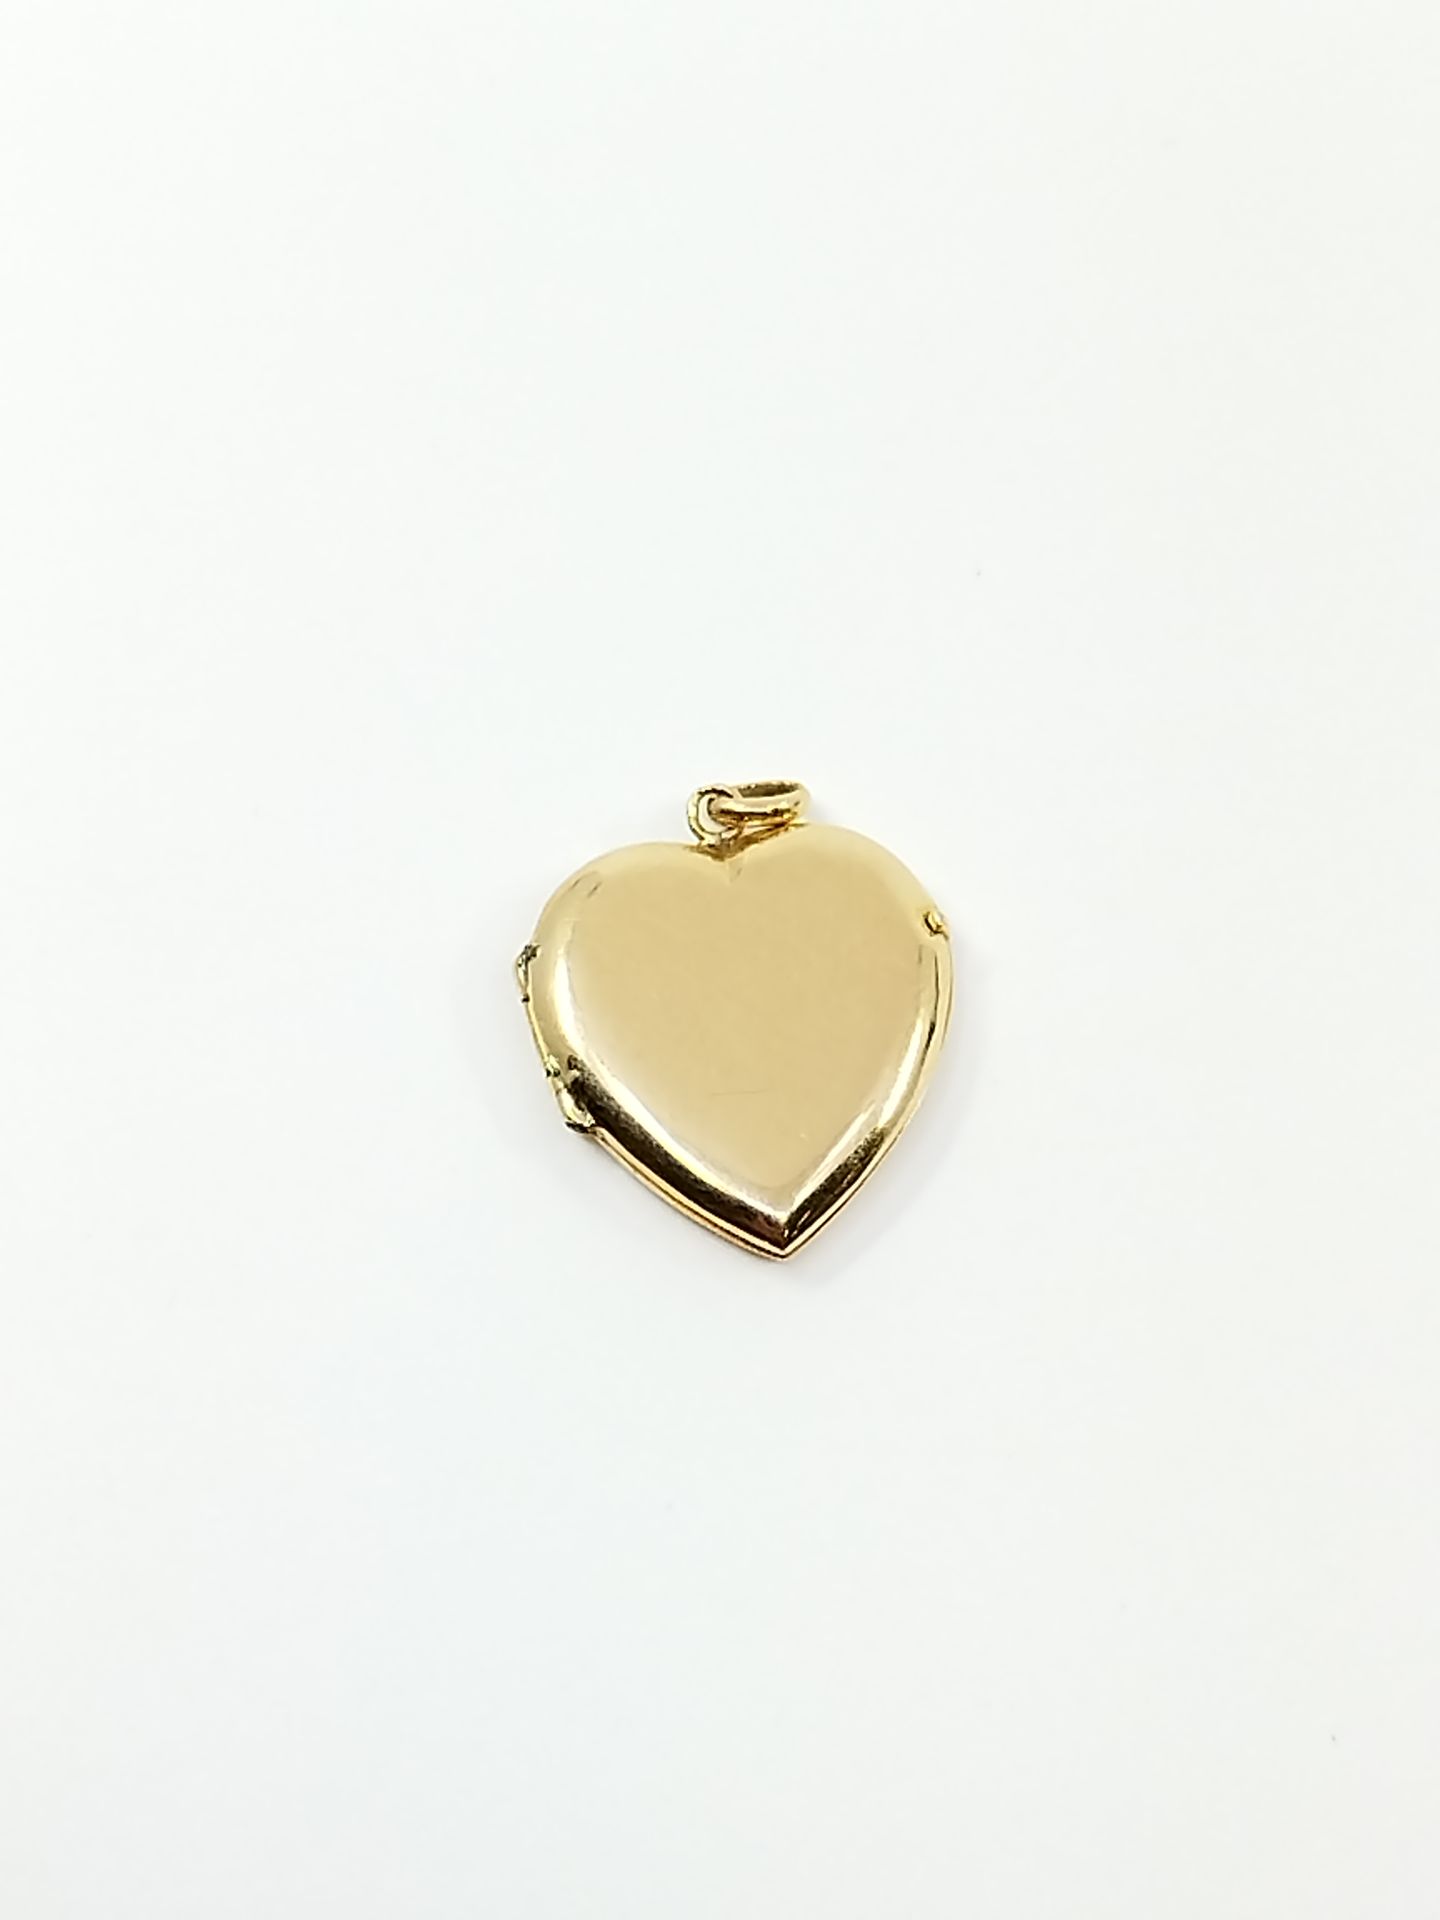 Null PENDENTIF porte-souvenir en or jaune 750° en forme de coeur

Poids brut : 2&hellip;